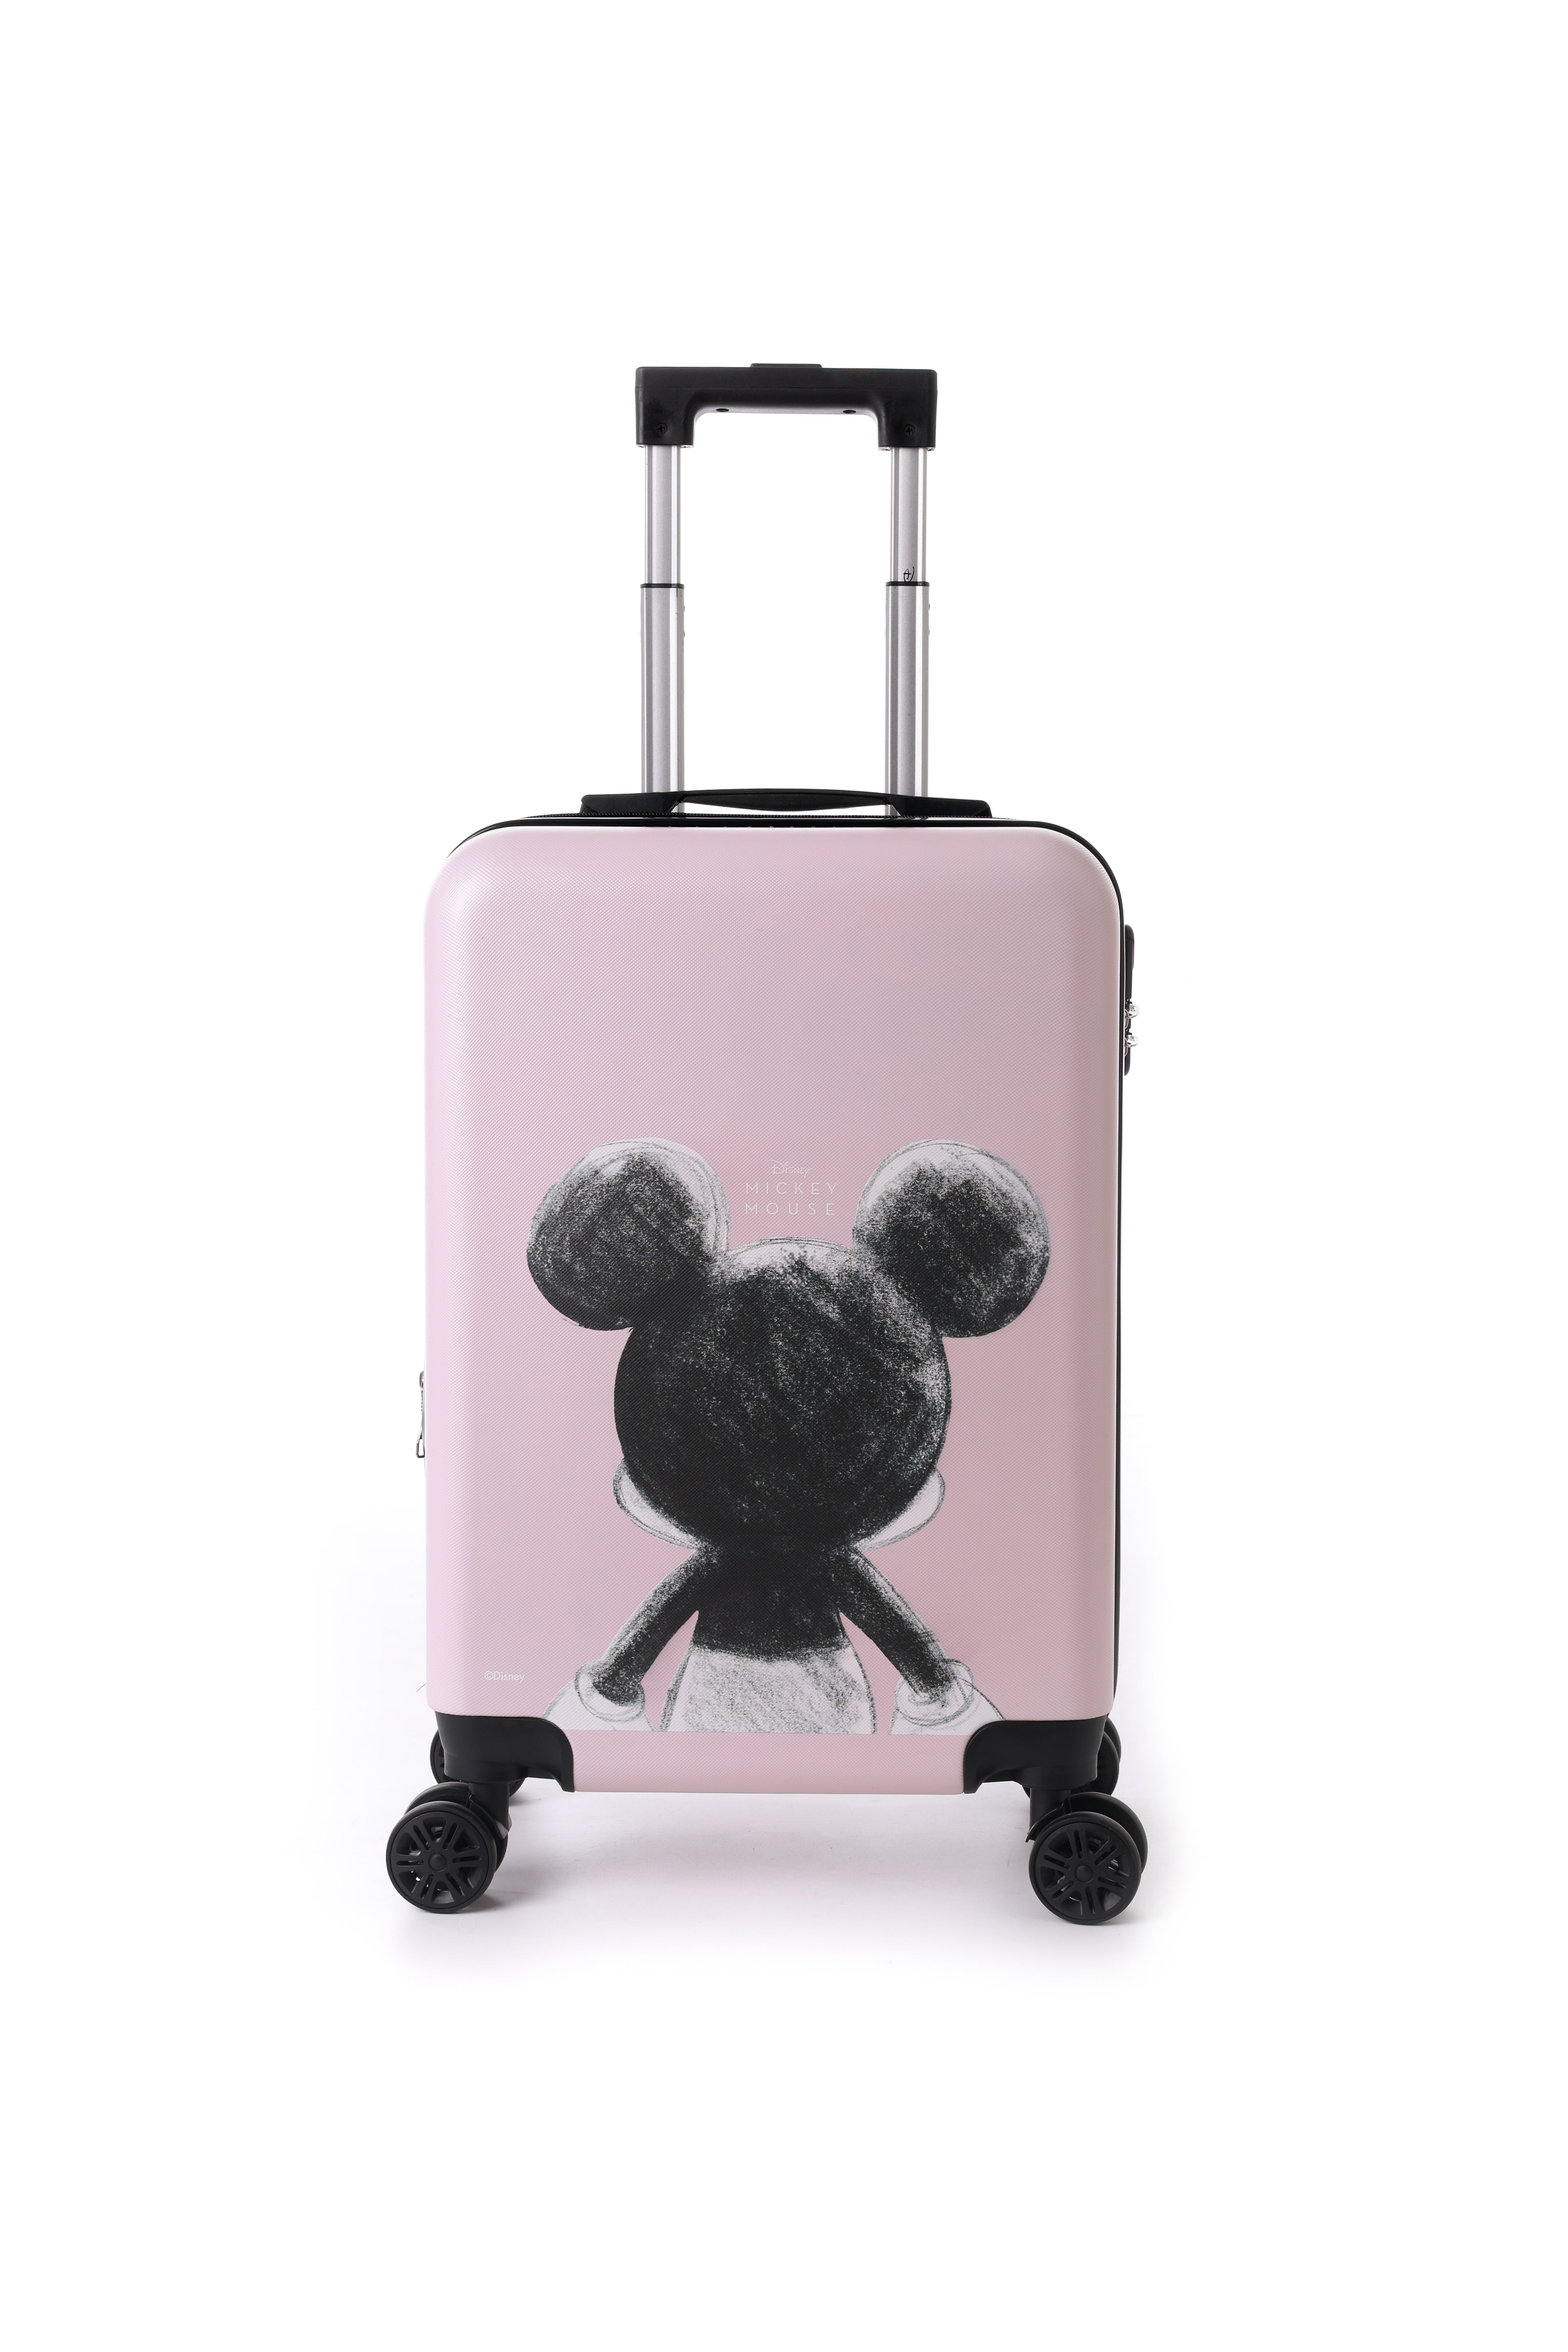 טרולי מזוודת עליה למטוס לילדים "20 מבית דיסני דגם מיקי מאוס - Disney